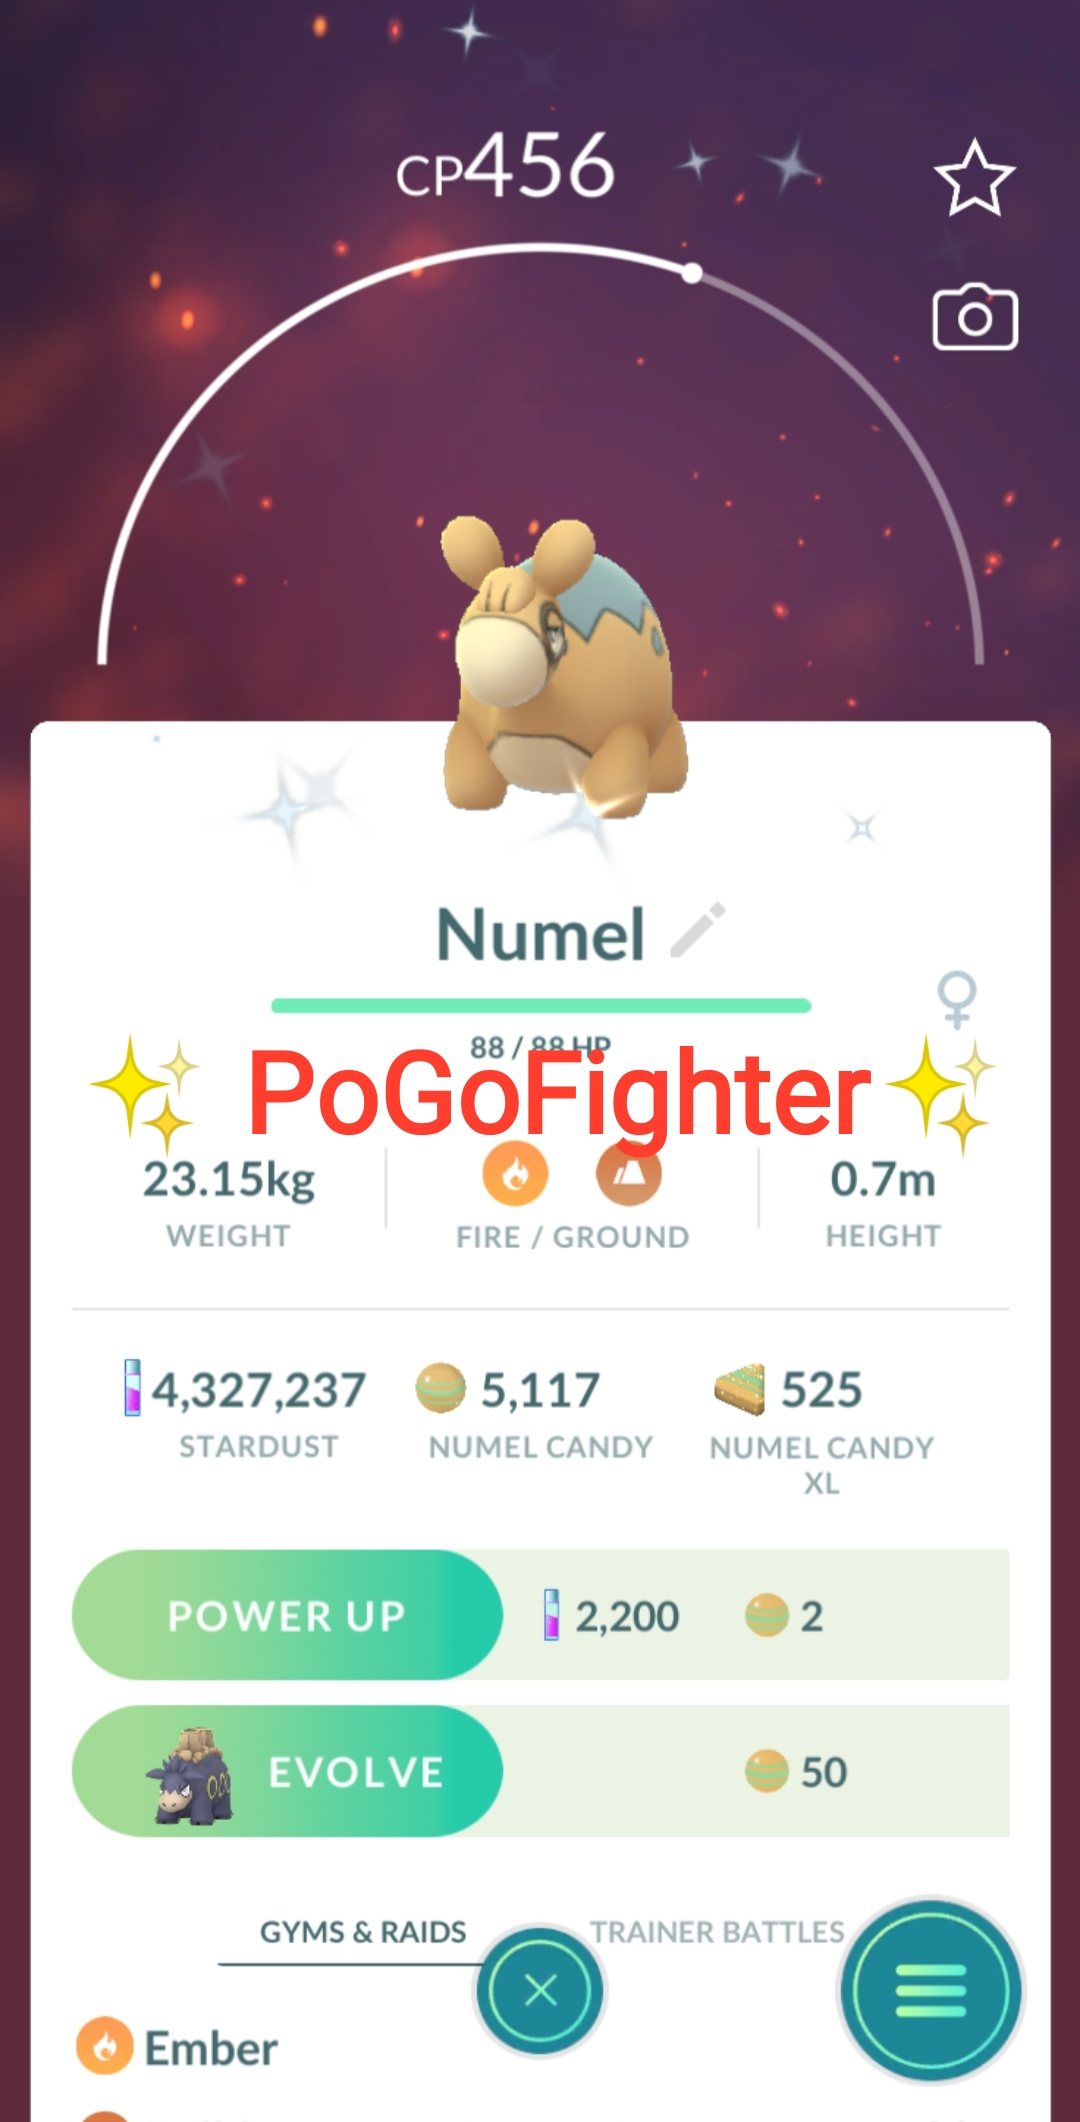 Pokémon Shiny Nihilego - Trade Go 1 Million Stardust